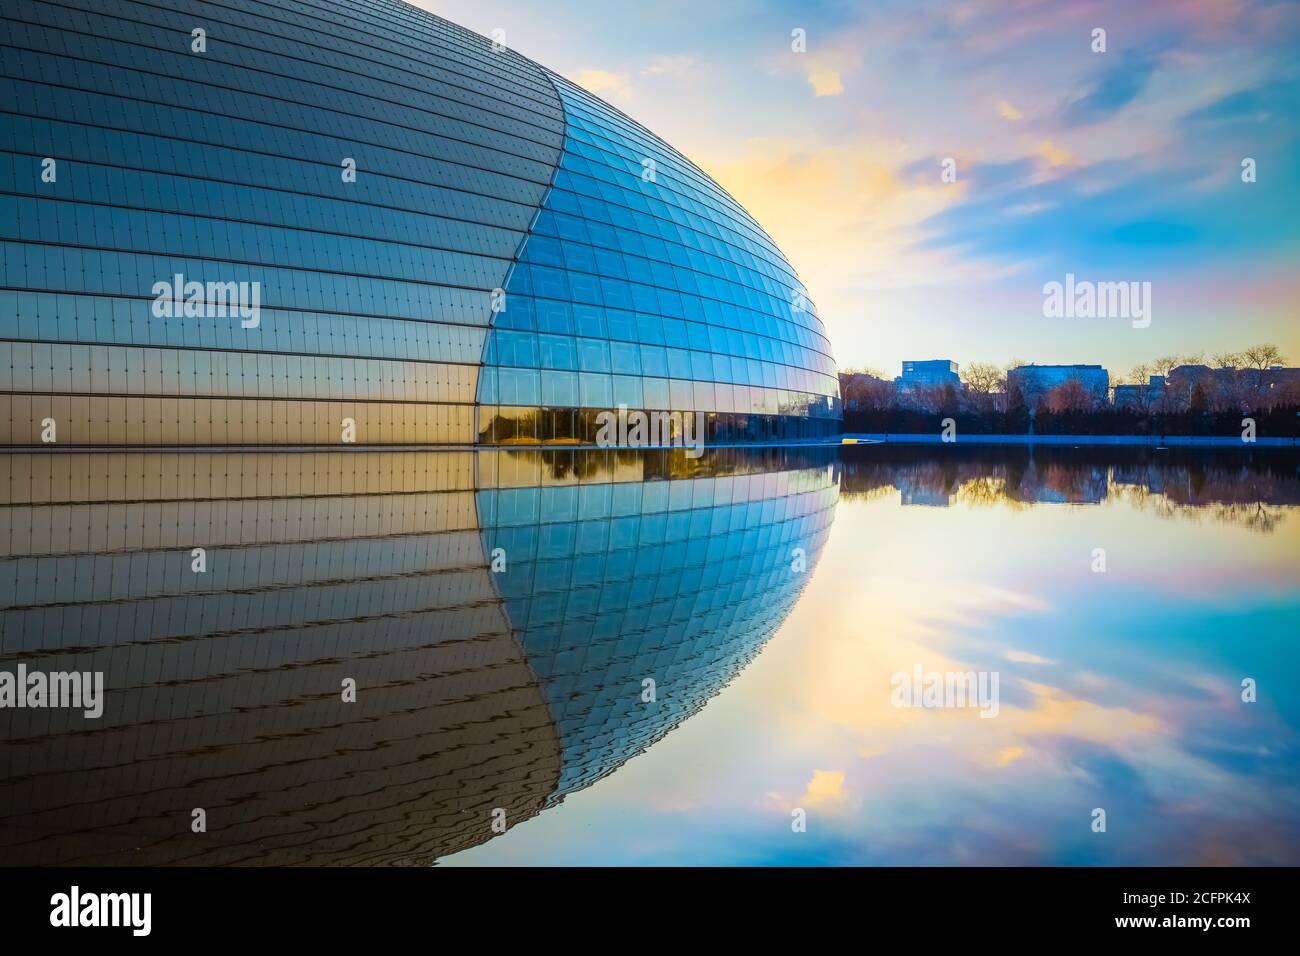 Beijing, China - 8 de enero de 2020: El Teatro Nacional de Artes de Peforming o el huevo de Gian es un centro de arte diseñado por Paul Andreu. Casas de ópera, música, teatro Foto de stock